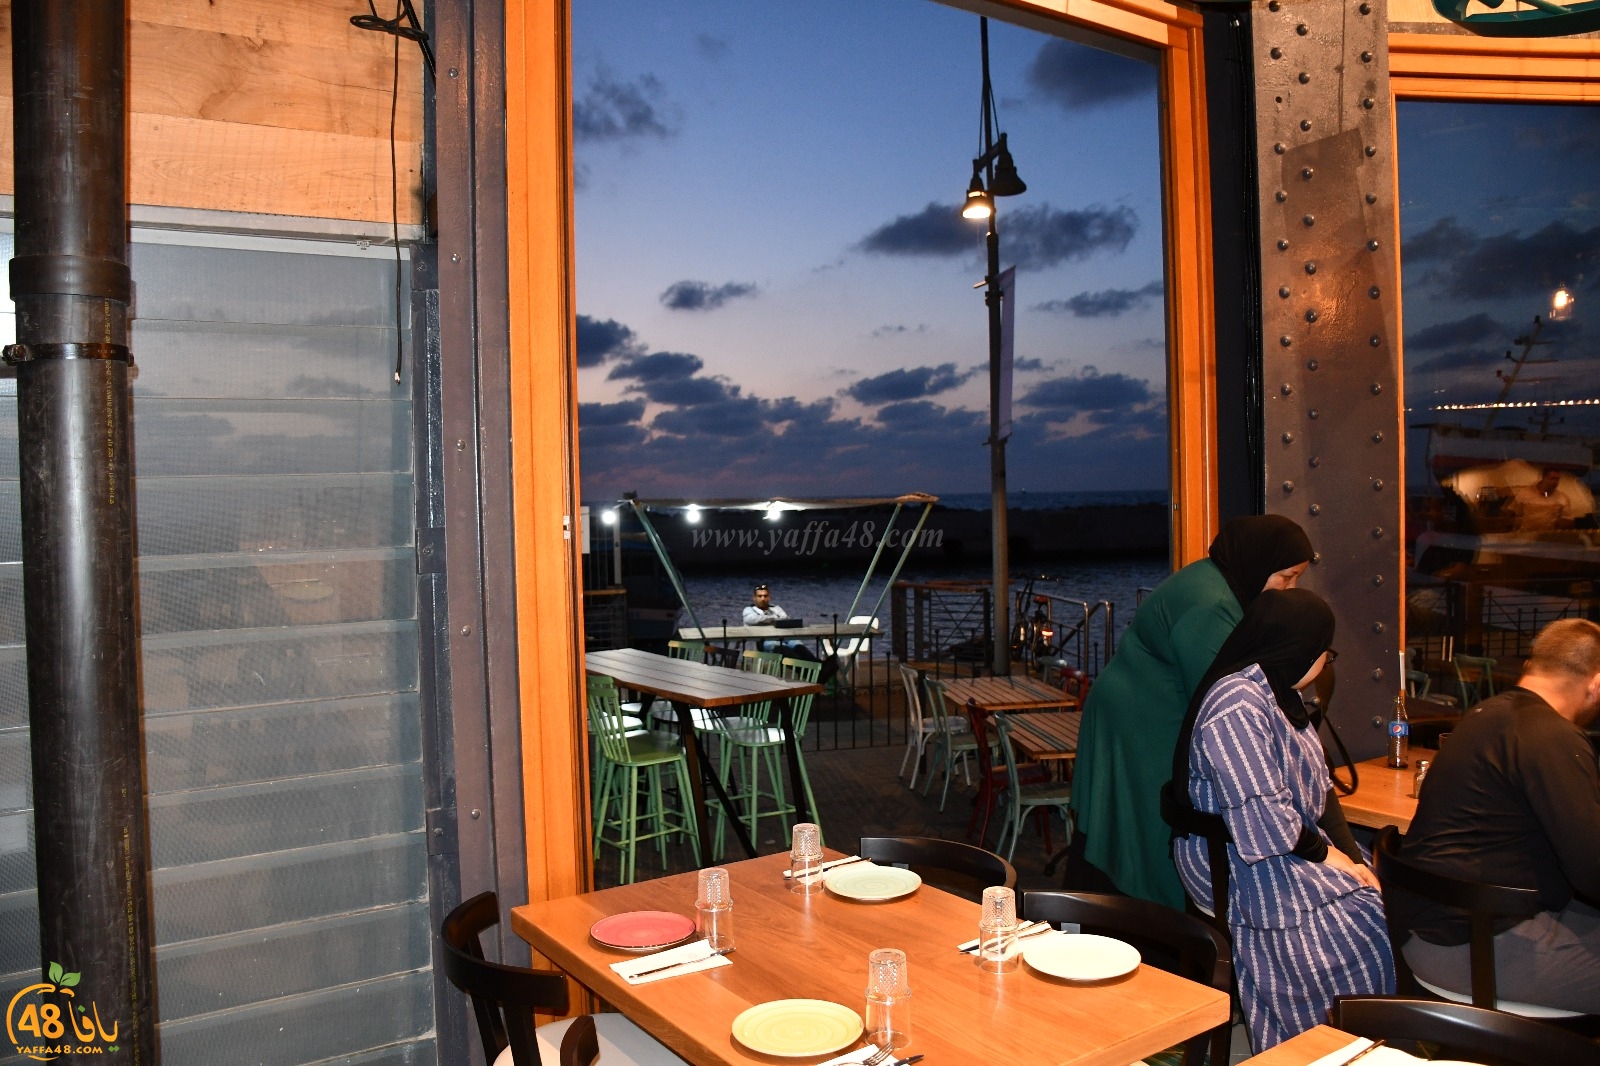 فيديو: افتتاح مطعم صقلية في مرفأ ميناء يافا لأشهى الوجبات البحرية على الطريقة الايطالية 